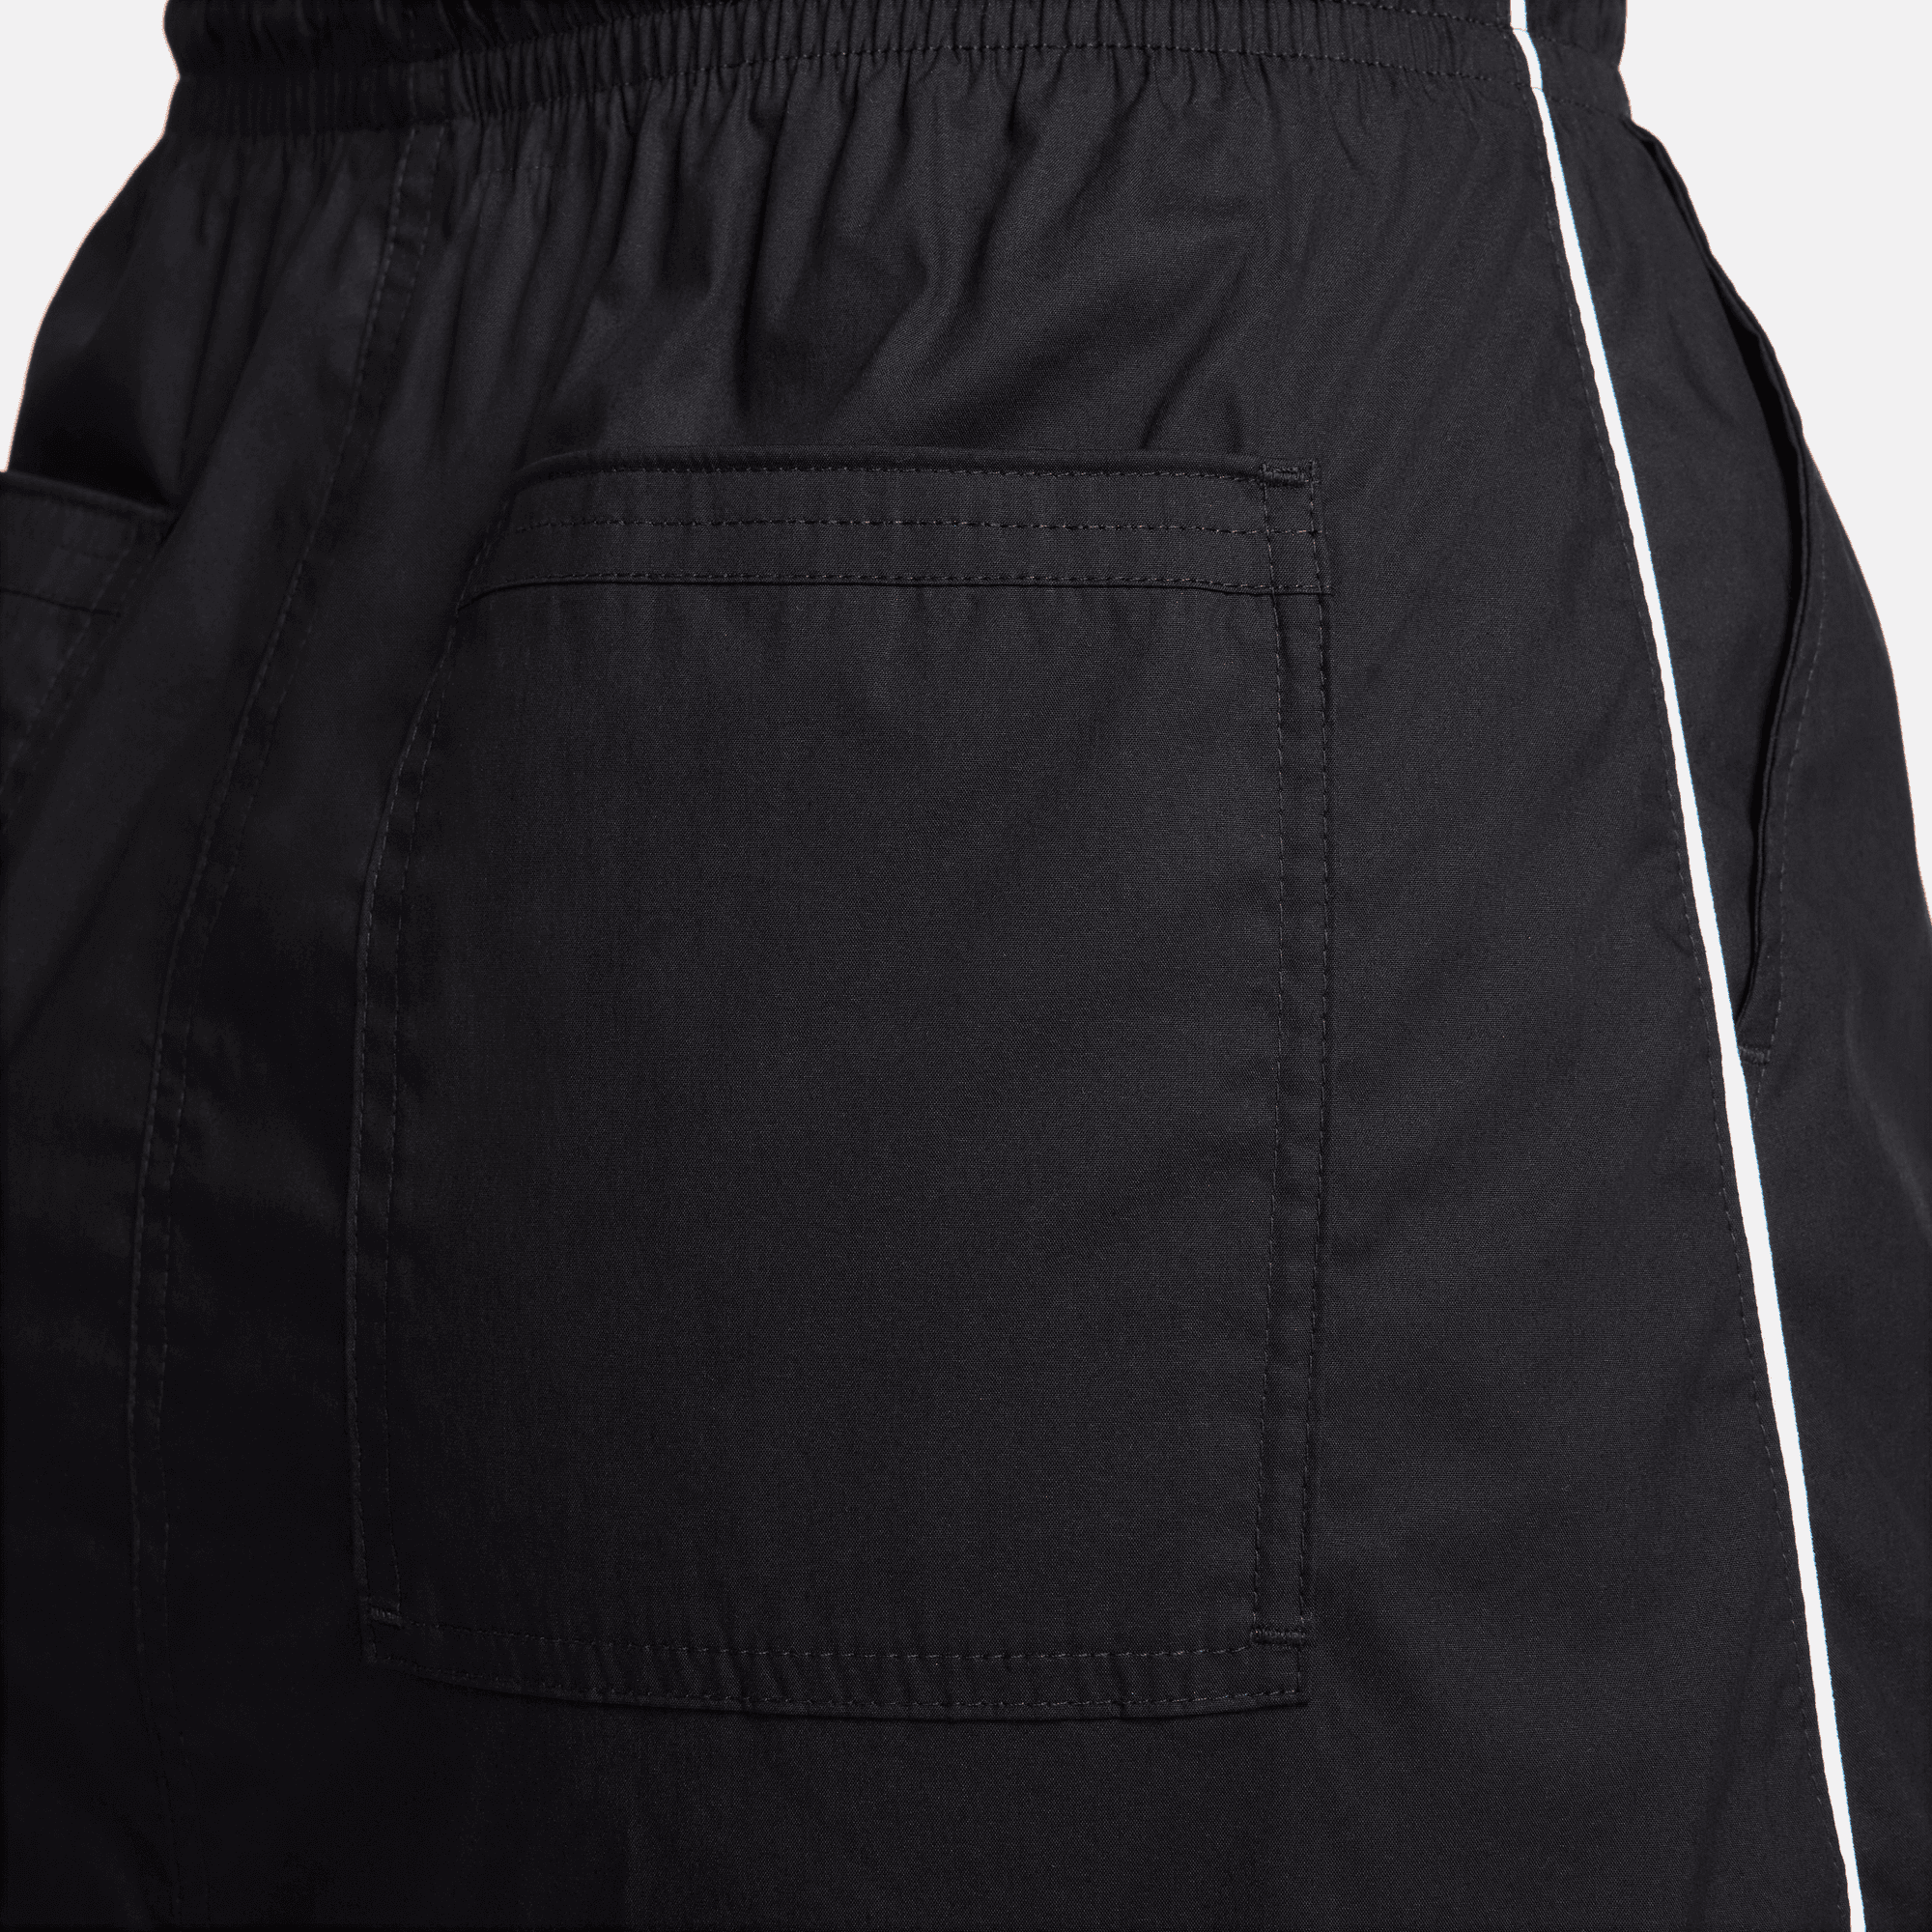 Nike Sportswear Women's Black Woven Skirt